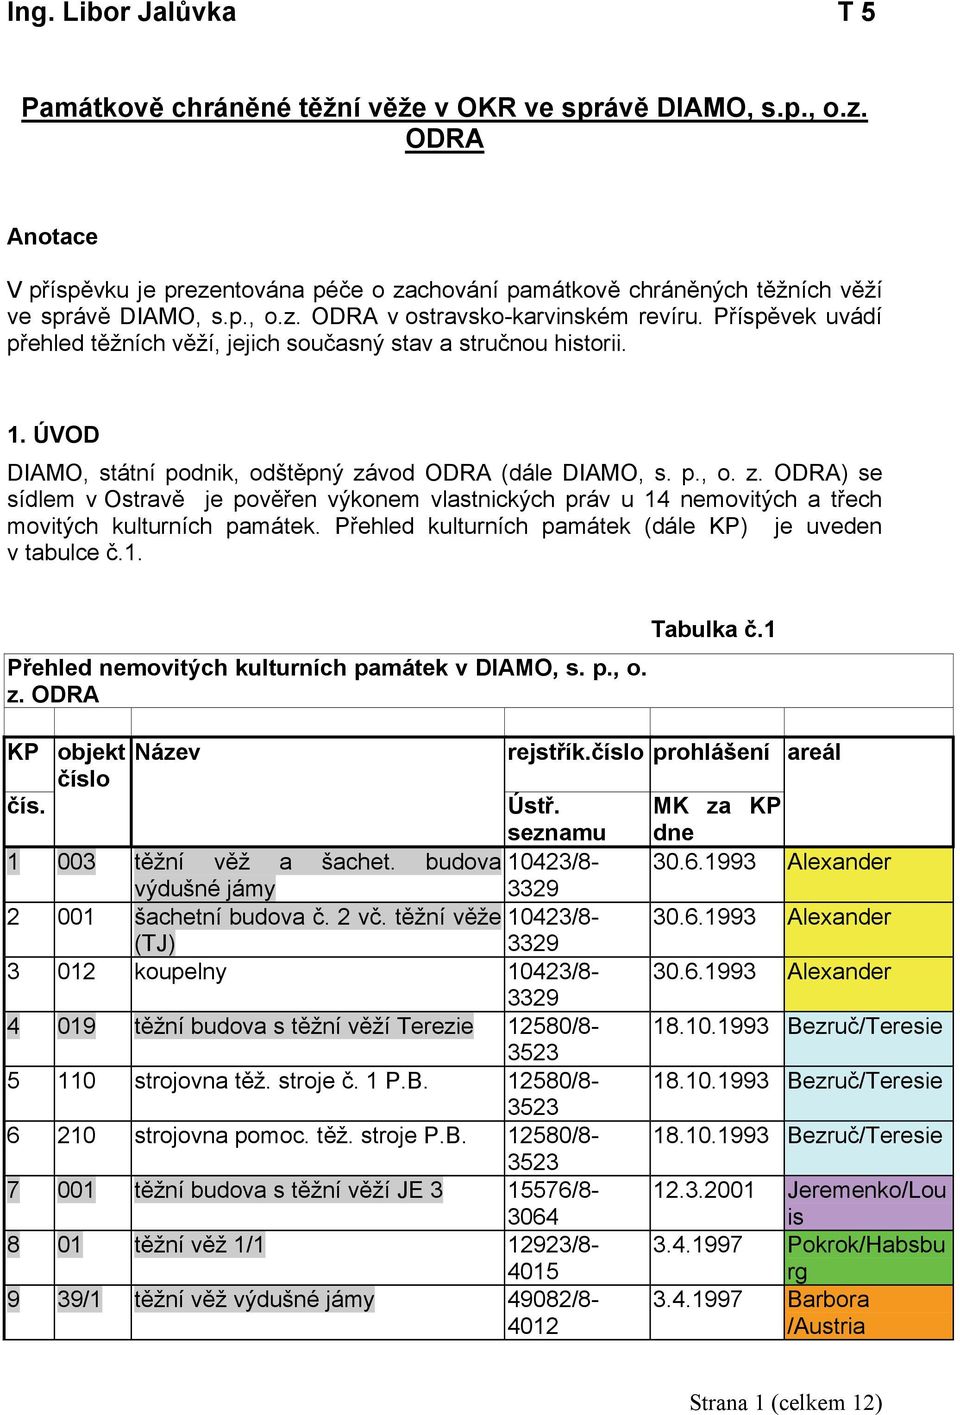 vod ODRA (dále DIAMO, s. p., o. z. ODRA) se sídlem v Ostravě je pověřen výkonem vlastnických práv u 14 nemovitých a třech movitých kulturních památek.